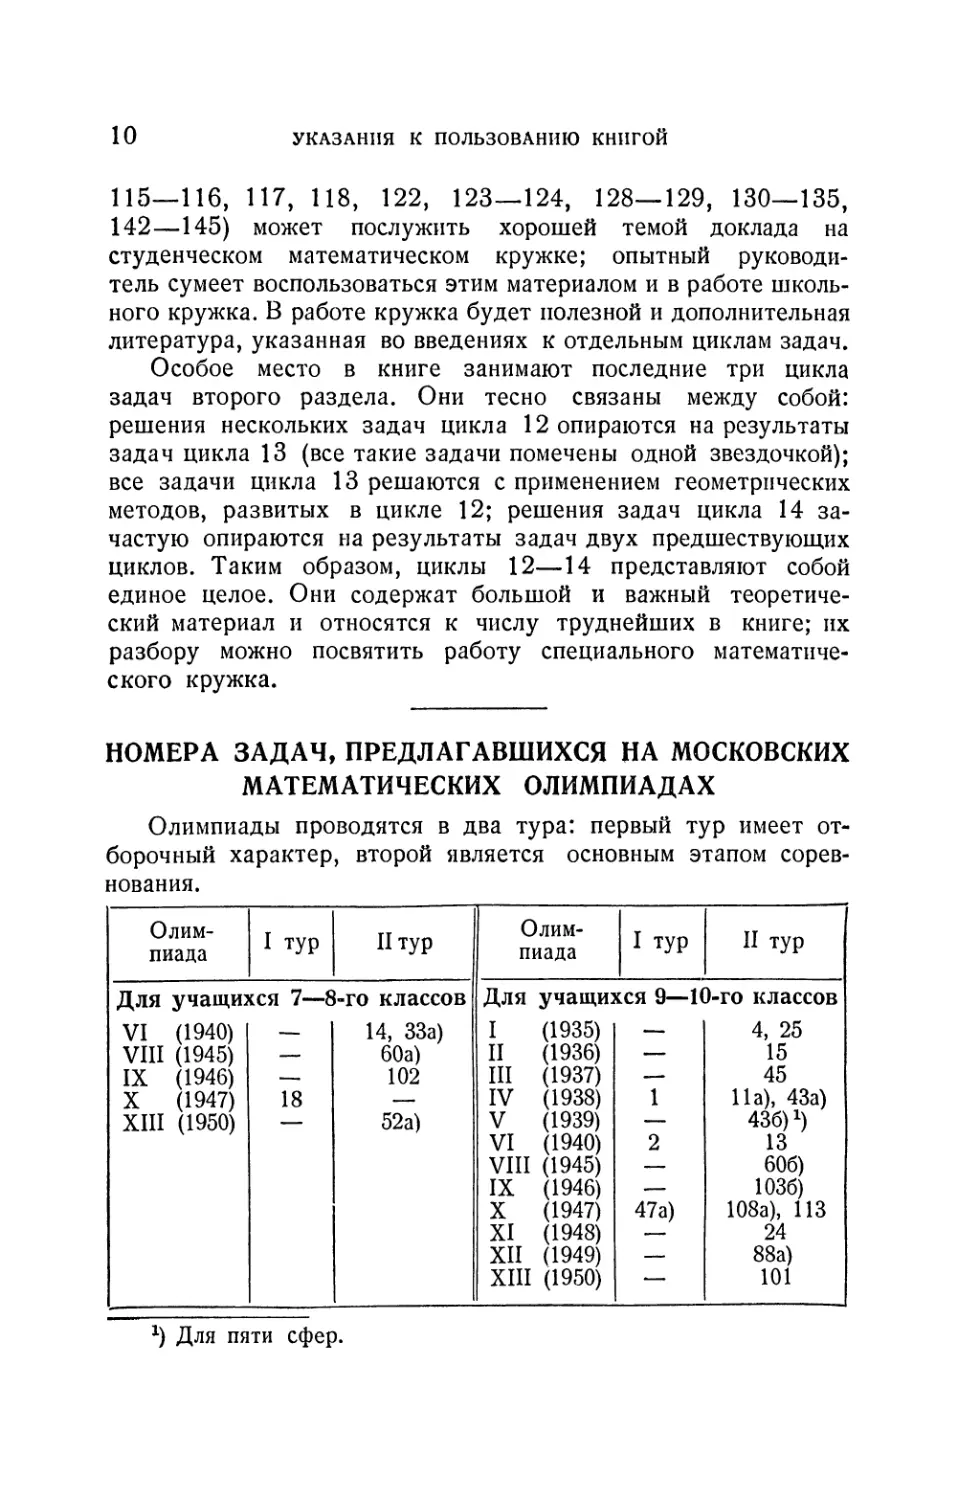 Номера задач, предлагавшихся на московских математических олимпиадах